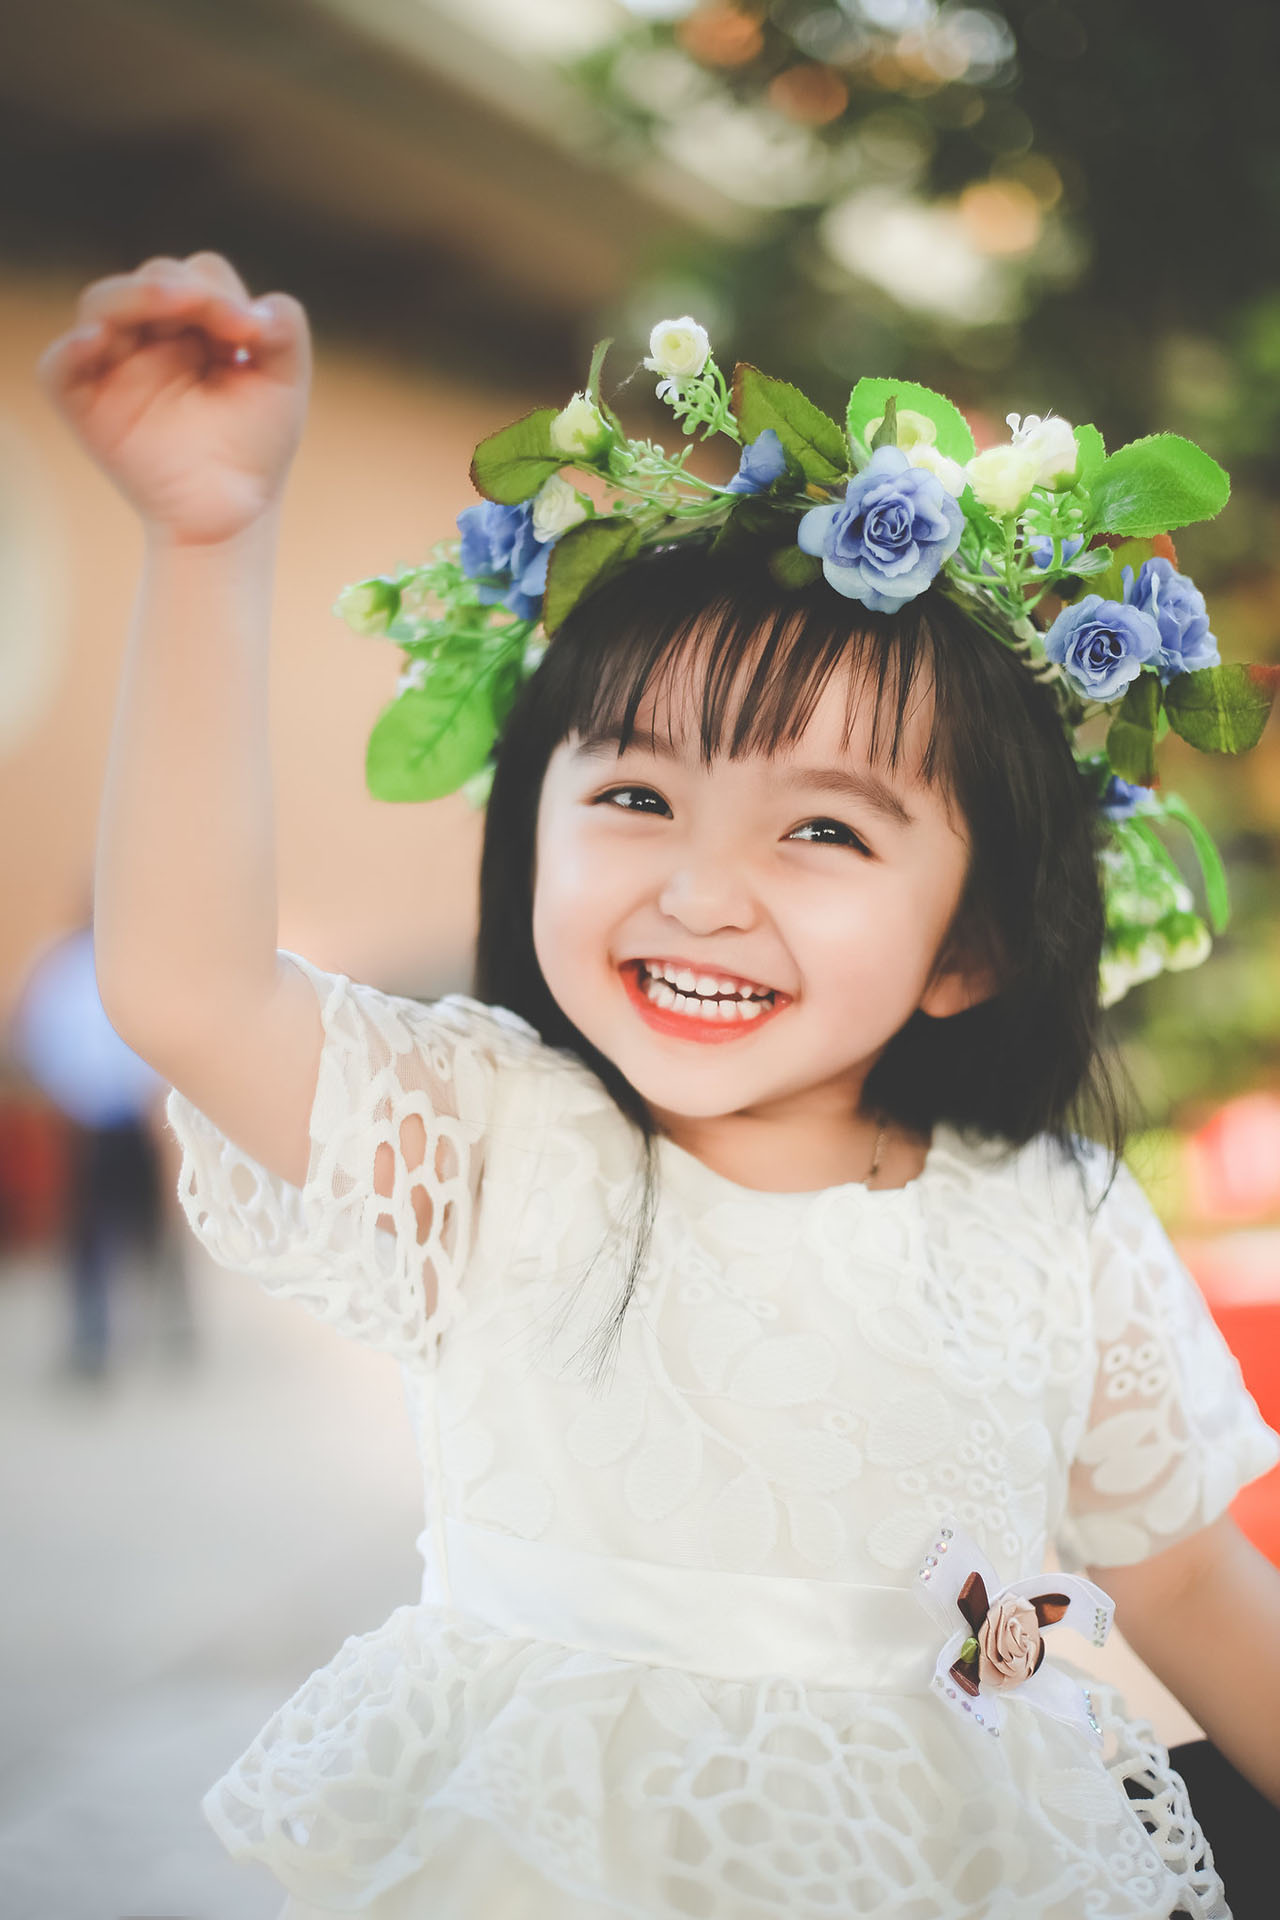 Hình ảnh một cô gái nhỏ xinh đẹp đang cười